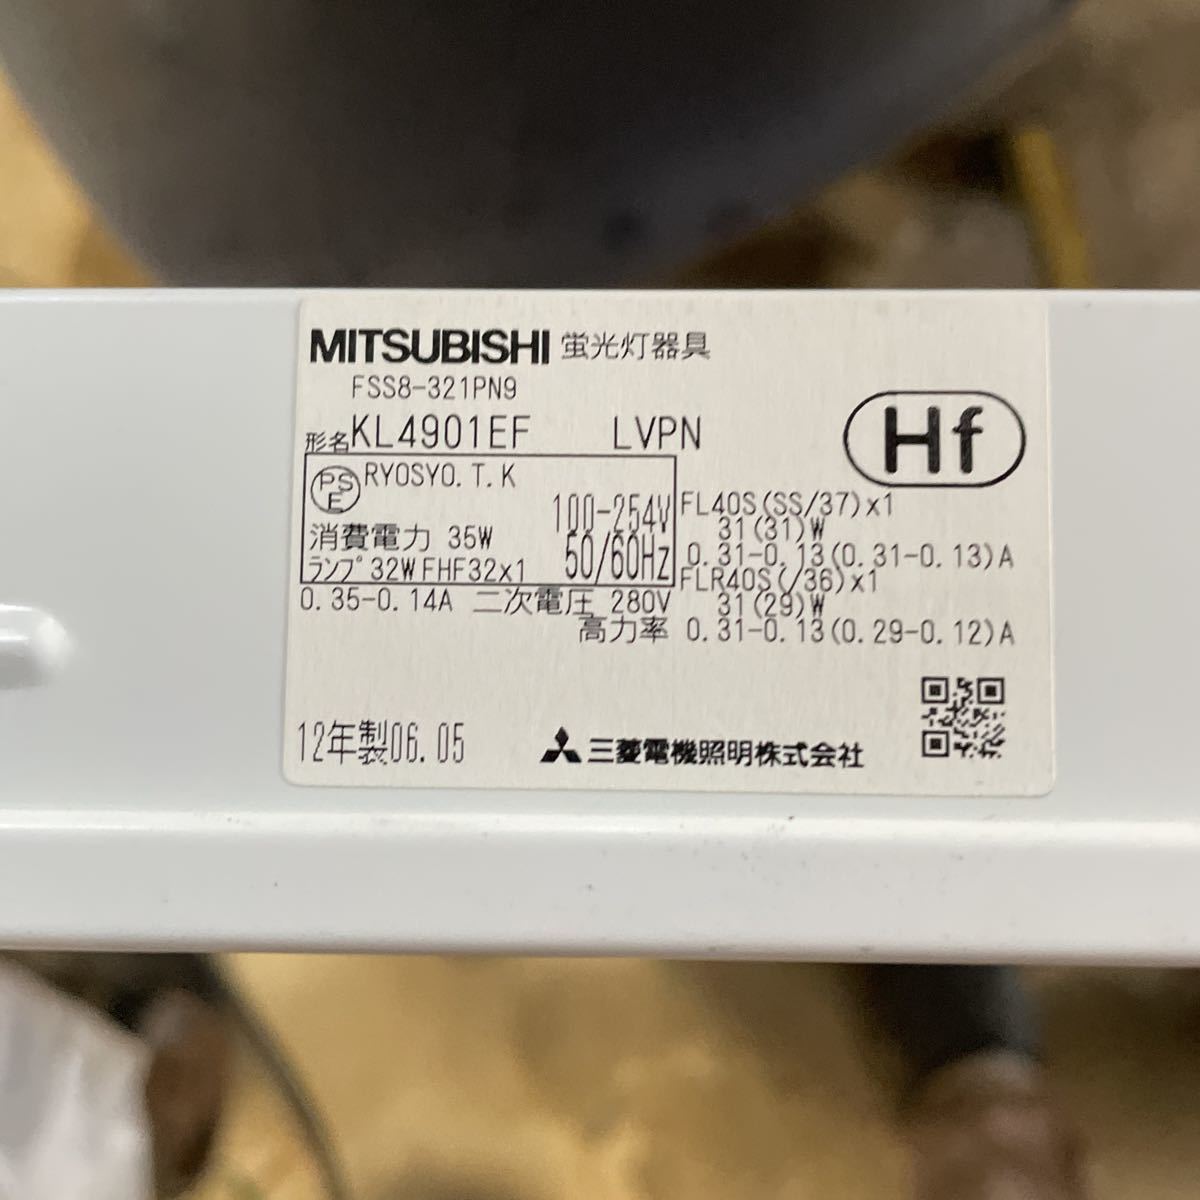  Mitsubishi Electric лампа дневного света прибор KL4901EF 100V беж скользящий работа место временный склад освещение 